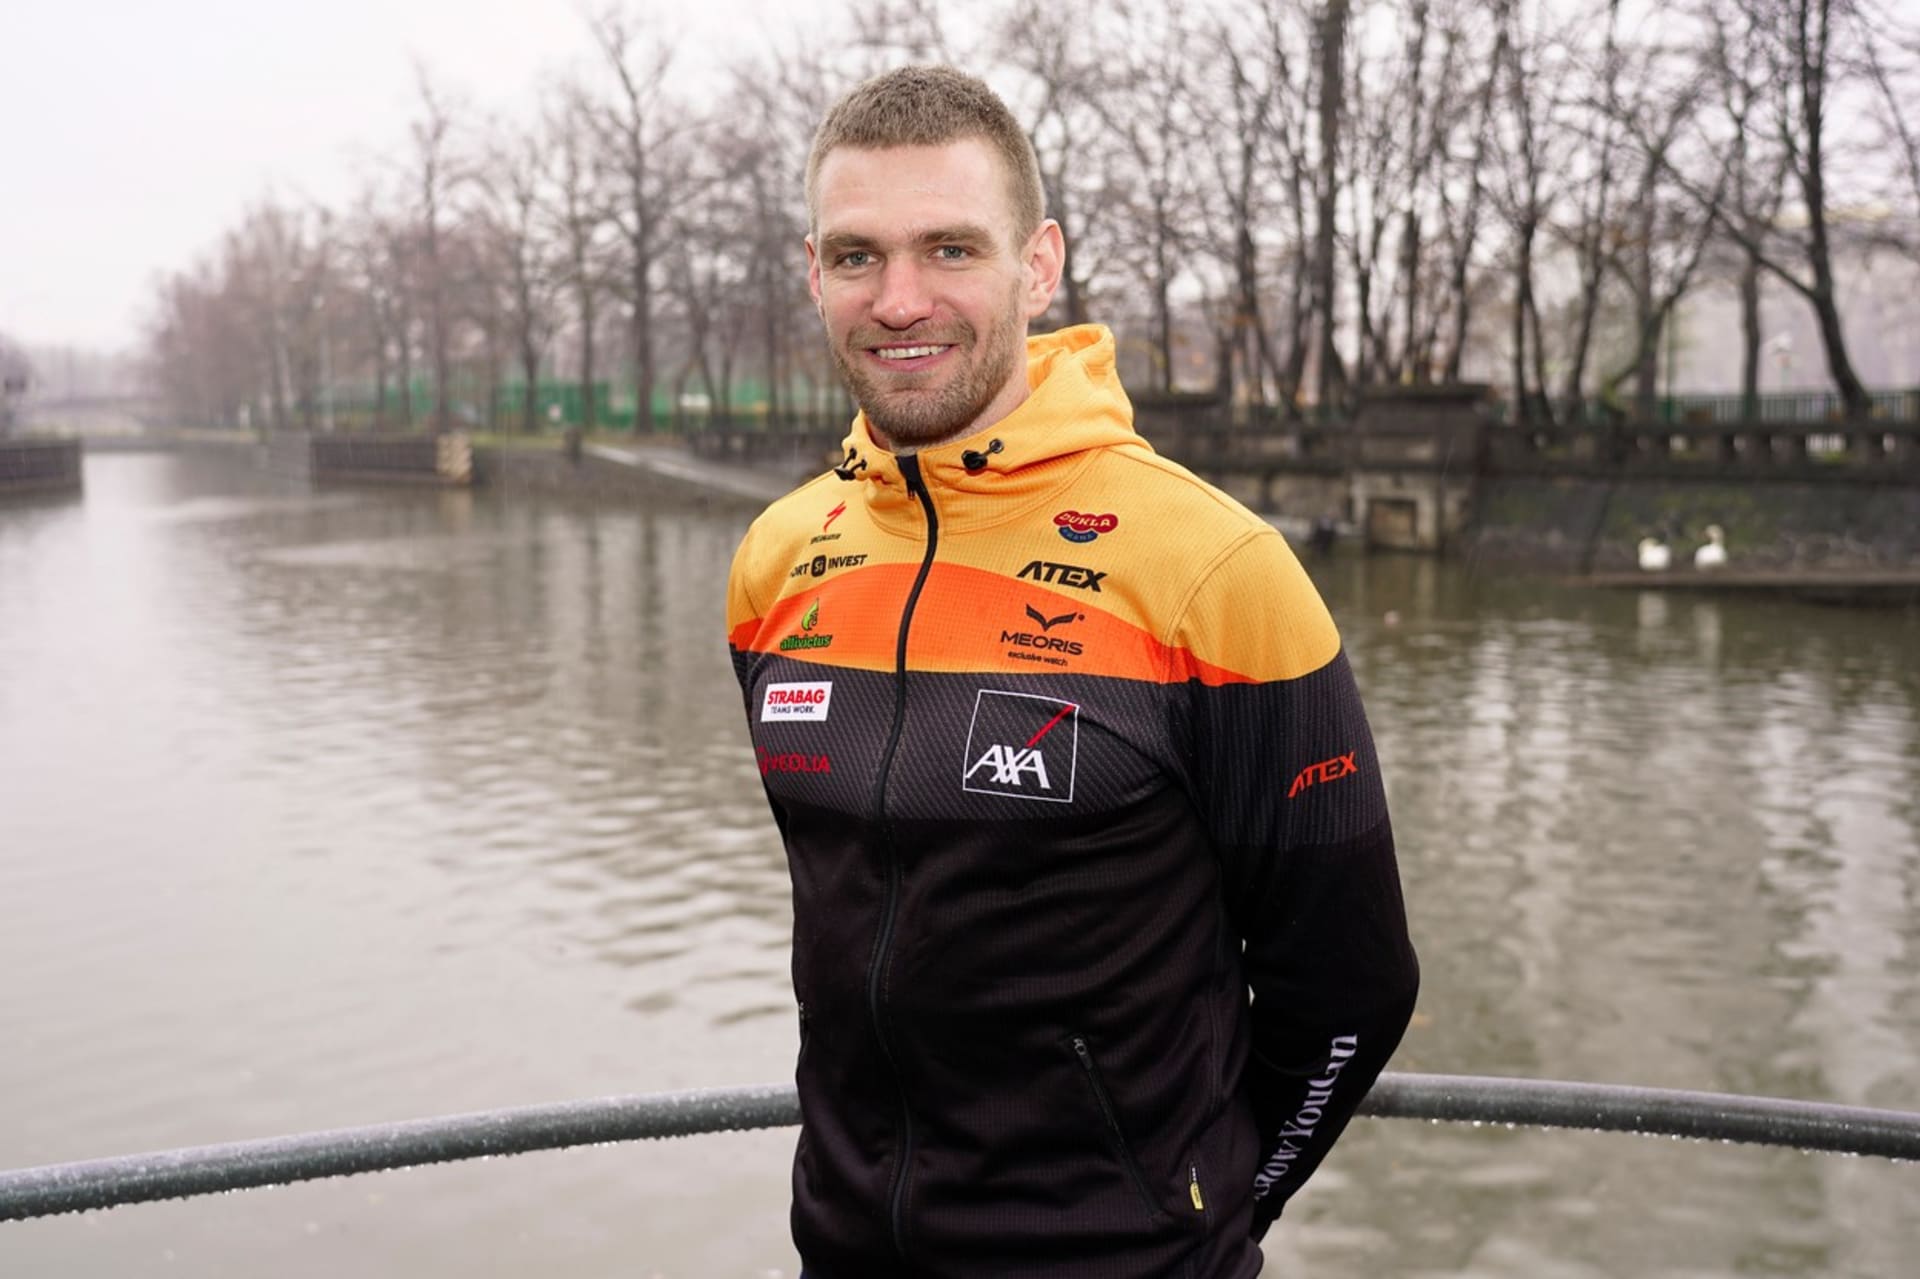 Skifař Ondřej Synek ukončil kariéru. Na snímku je zachycen v březnu roku 2020 těsně před zahájením sezony.